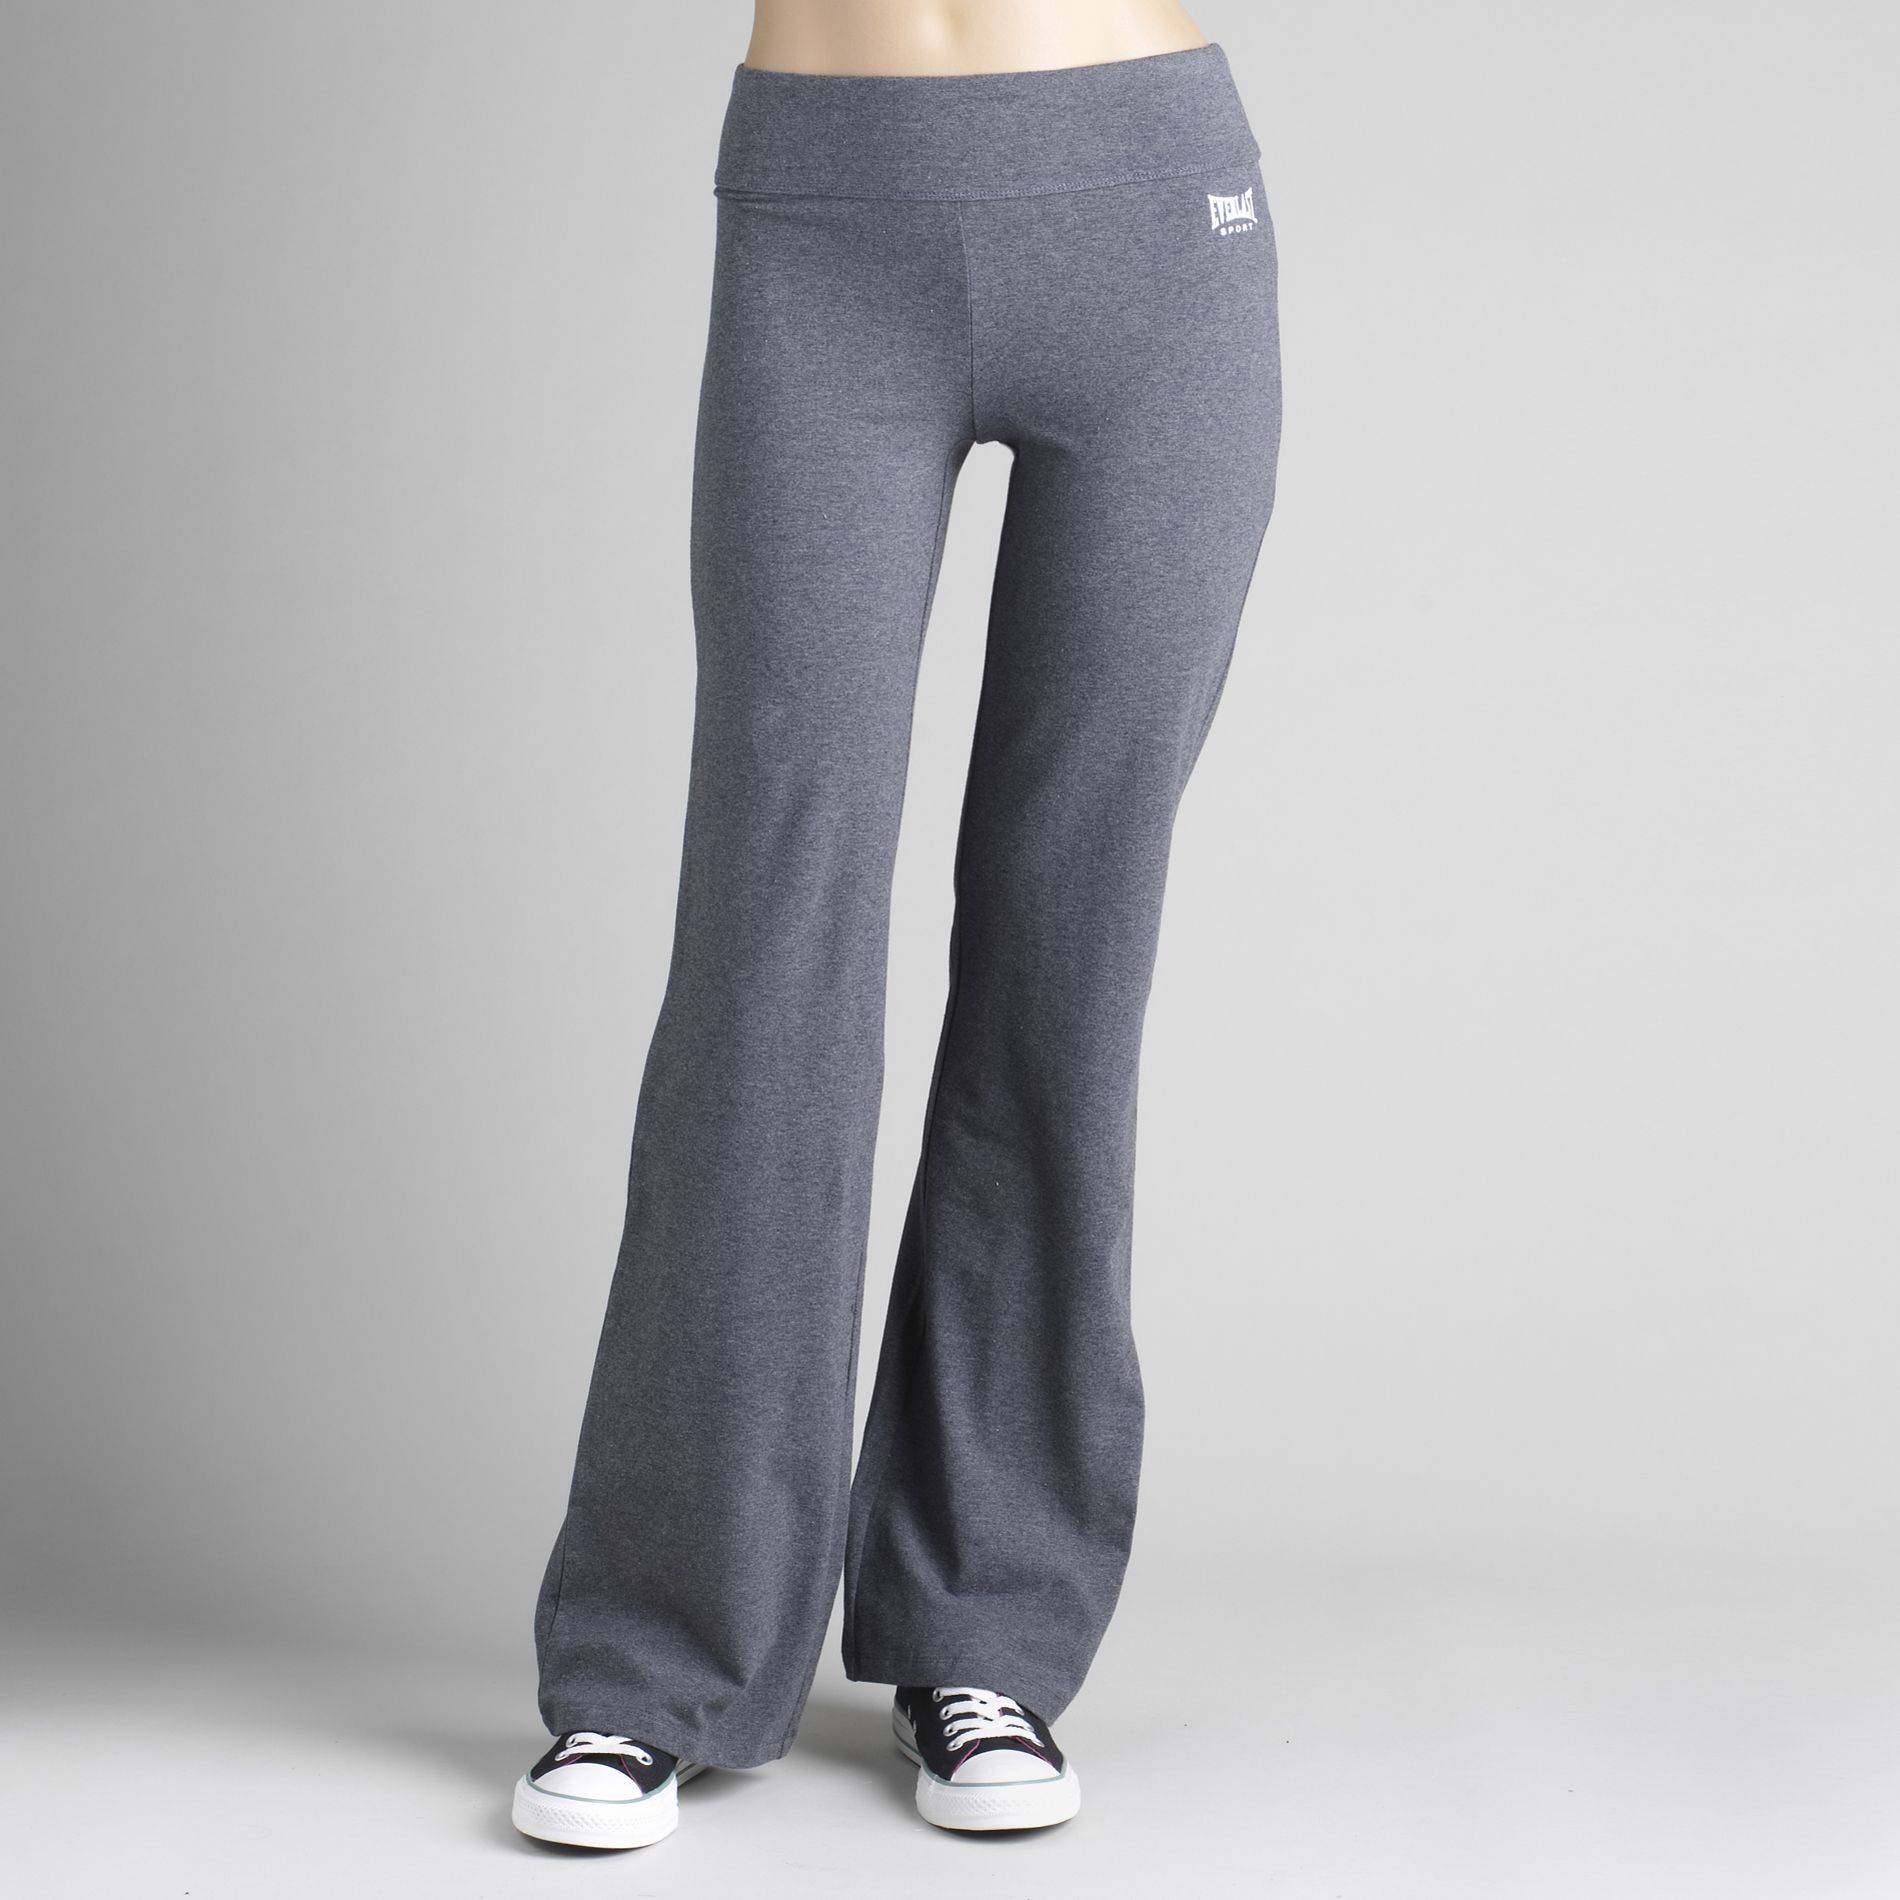 086323061577 UPC - Everlast Sport Women's Slim Fit Bootcut Sweatpants  Jacques Moret, Inc.